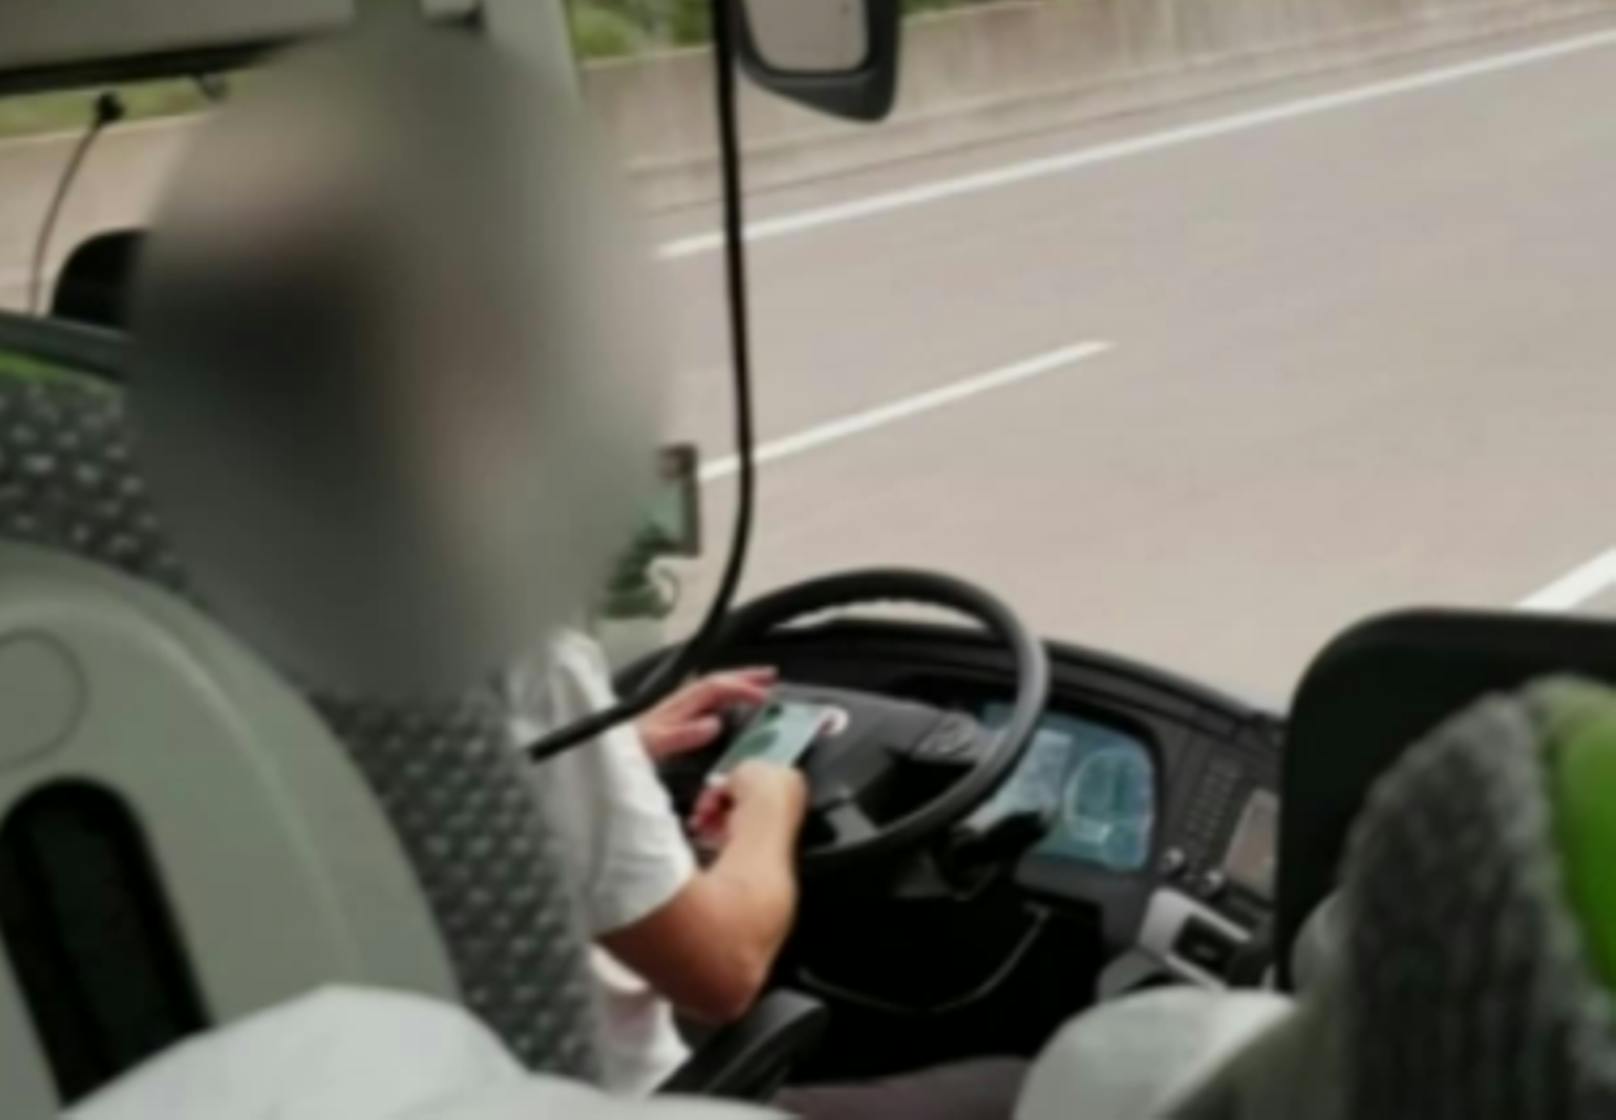 "Flixbus-Fahrer spielte auf der Autobahn Videospiele"